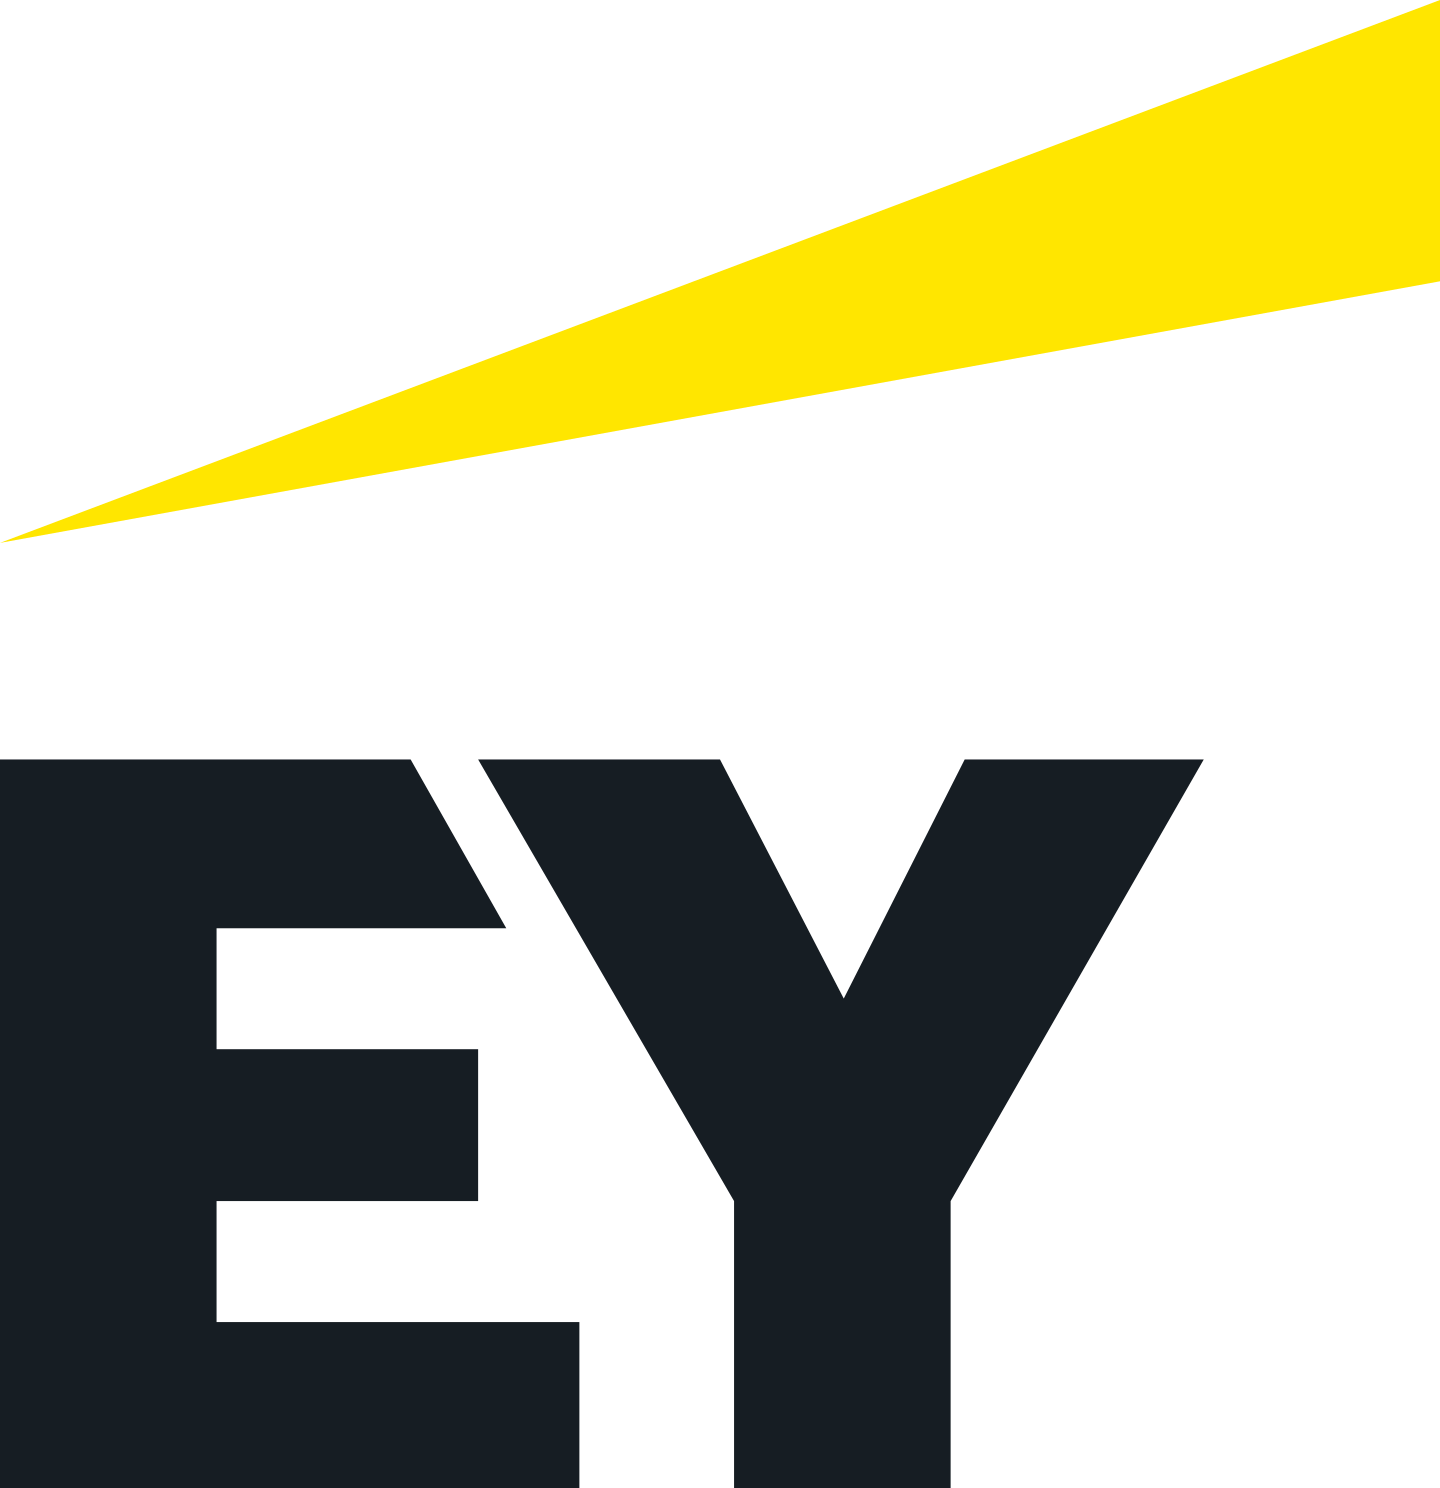 Ey Logo PNG Image